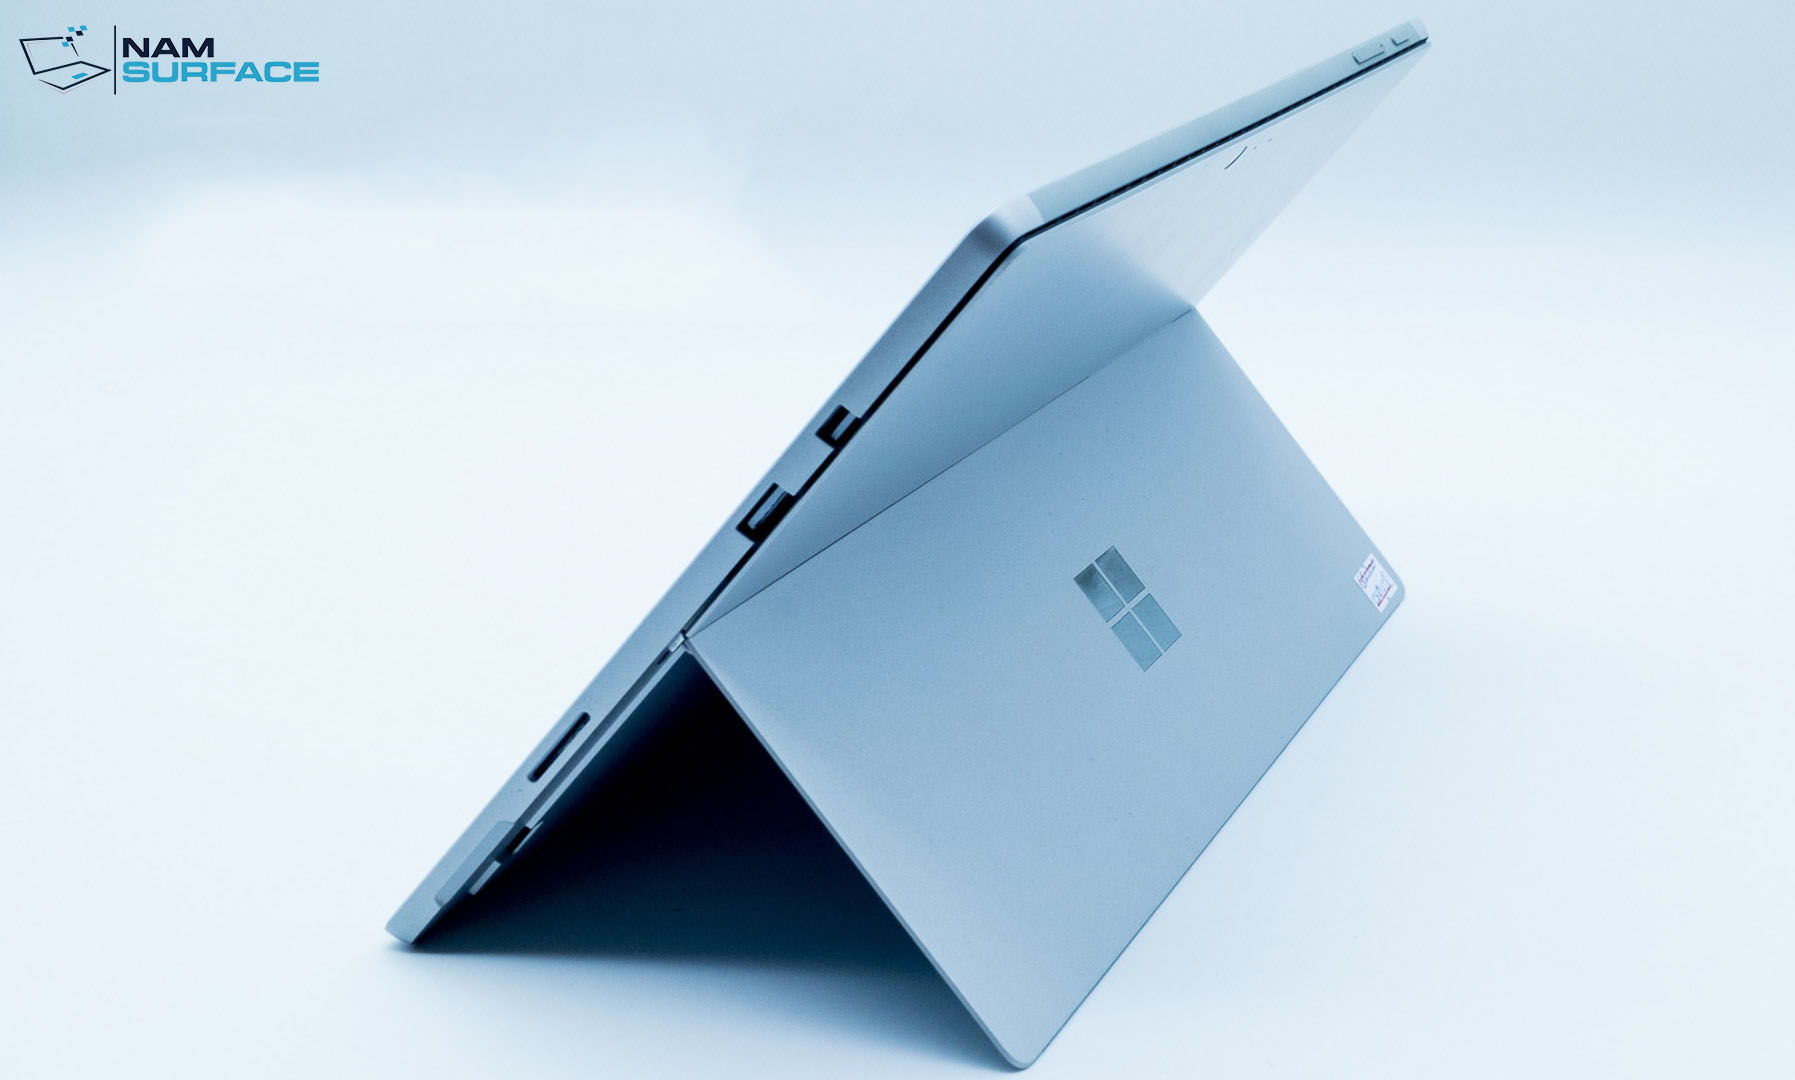 Microsoft Surface Pro 6 Core i5/ 8GB/ 256GB (Like new)